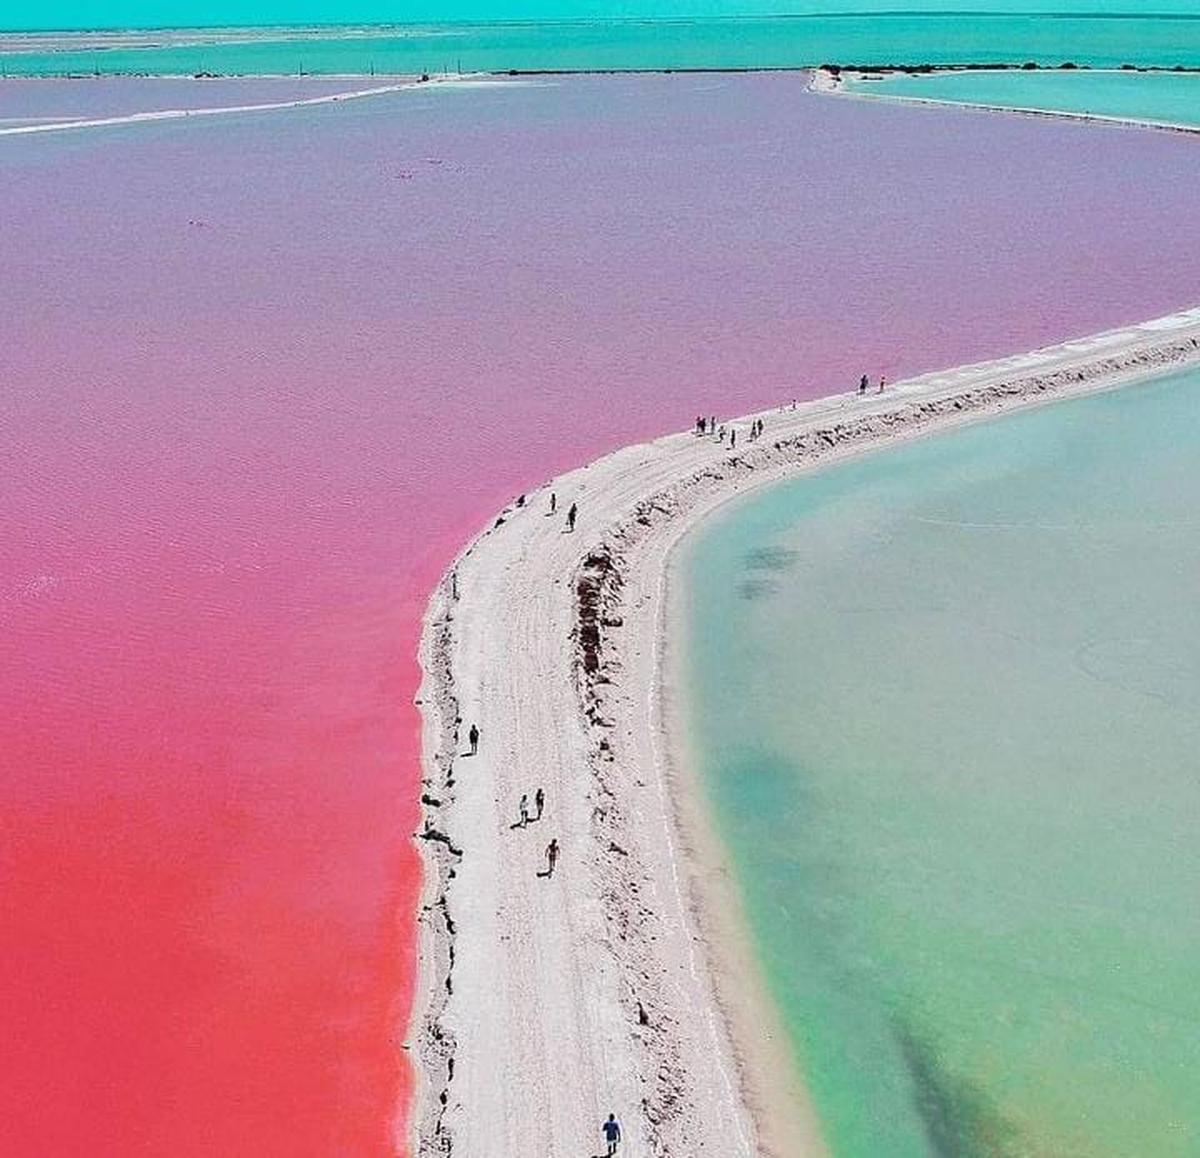 Las coloradas en Yucatán | Playa color rosa en Yucatán, México (Blankhub/Instagram)